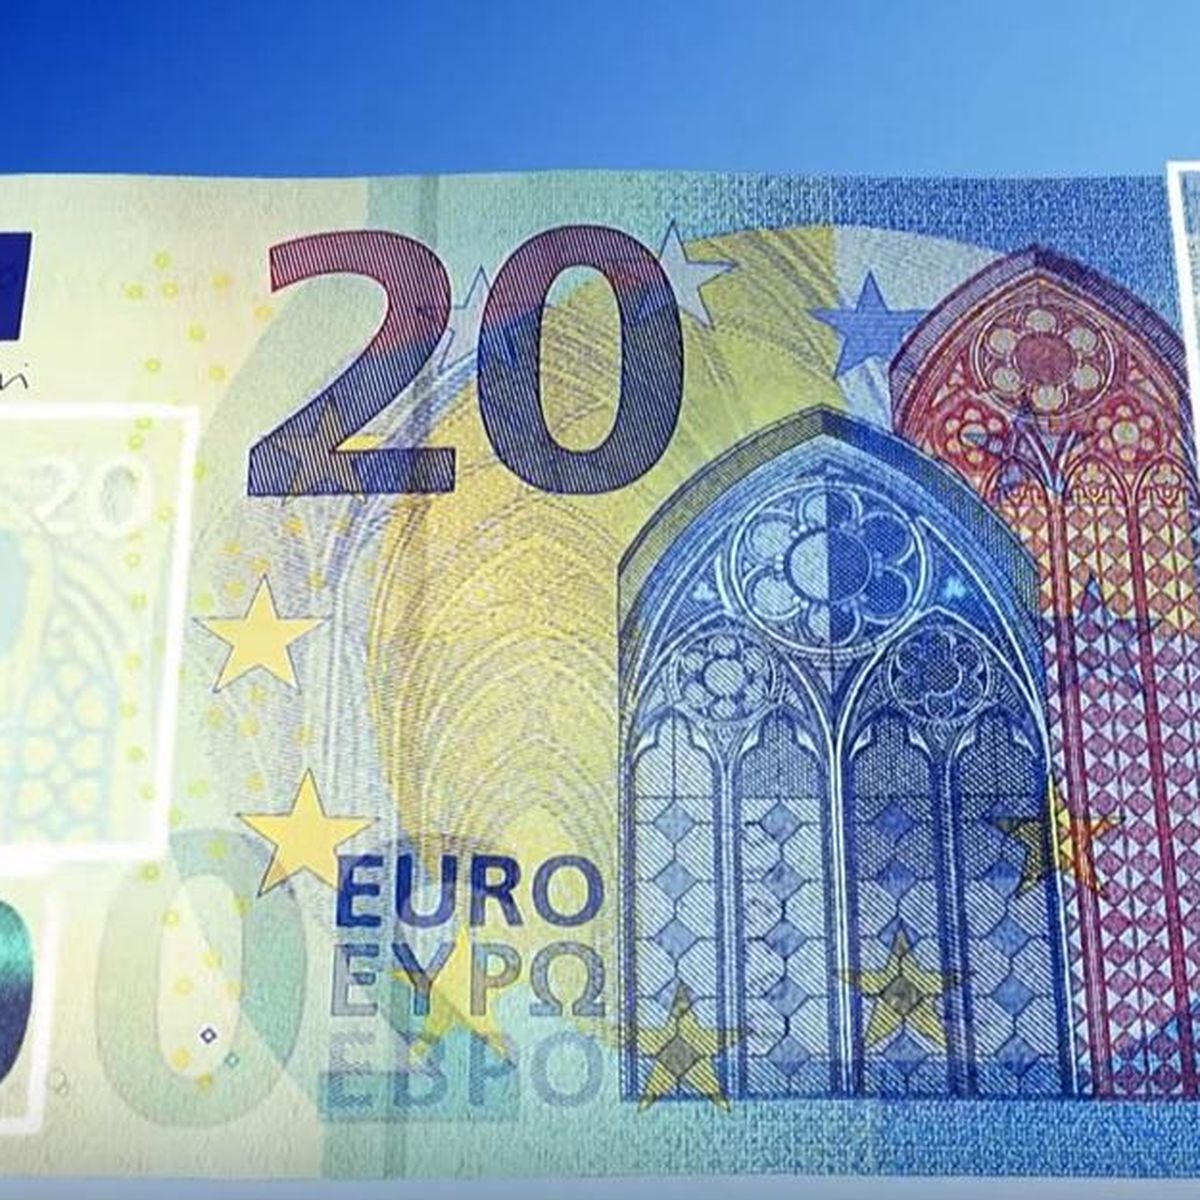 El nuevo billete de 20 euros entra en circulación con varias modificaciones